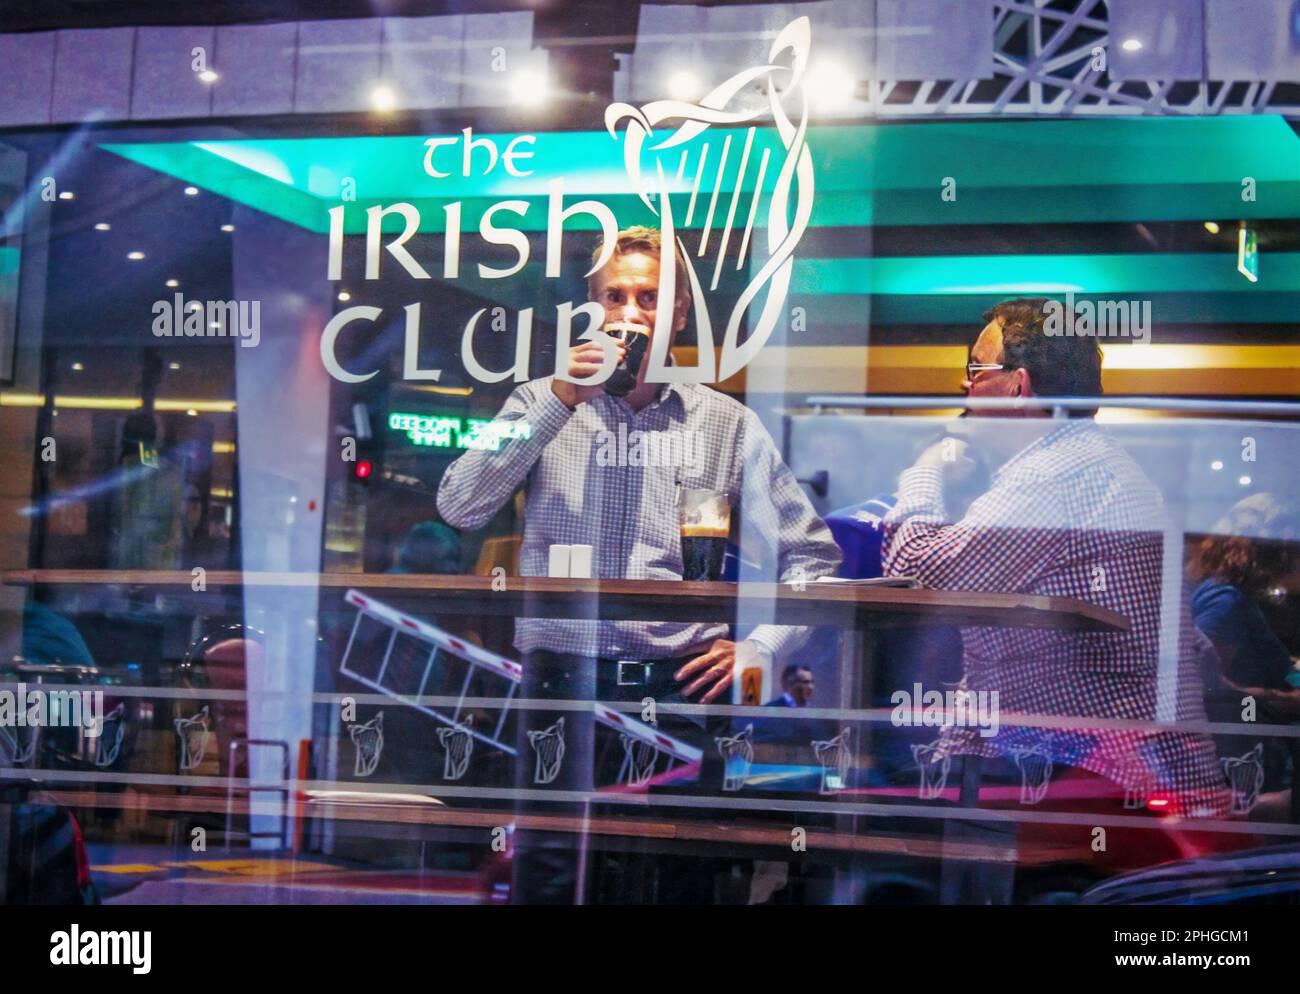 2015 - 03 Uhr Brisbane Australien - Straßenfotografie im Fenster des irischen Clubs - zwei Männer am Tisch am Fenster, die dunkles Bier trinken - Reflexionen der Stadt im Wind Stockfoto